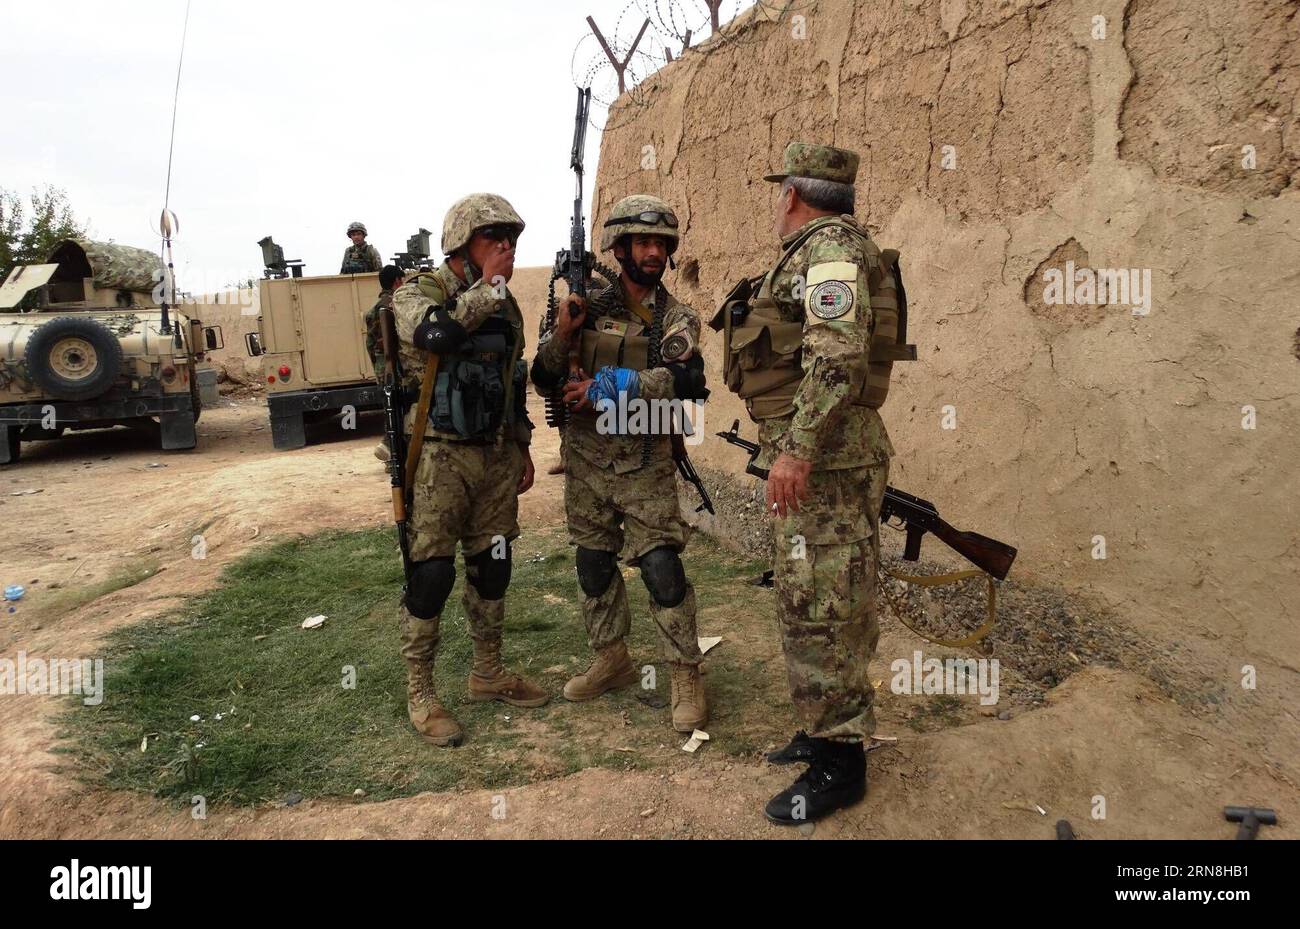 (151025) -- HALMAND, 24. Oktober 2015 -- Polizisten stehen während einer Militäroperation am Stadtrand von Lashkargah in der Provinz Helmand, Afghanistan, 24. Oktober 2015 Wache. Afghanische Sicherheitskräfte haben darauf gedrängt, die Militanten in widerspenstigen Provinzen zu beseitigen, da Taliban-Militanten versucht haben, vor dem Winter in Afghanistan mehr Territorium einzunehmen und ihre Positionen zu festigen. ) AFGHANISTAN-HALMAND-MILITÄROPERATION Safdary PUBLICATIONxNOTxINxCHN OKT 24 2015 Polizisten stehen während einer Militäroperation AM Rande der Provinz Helmand in Afghanistan OKT 24 2015 afghanische Sicherheit für Stockfoto